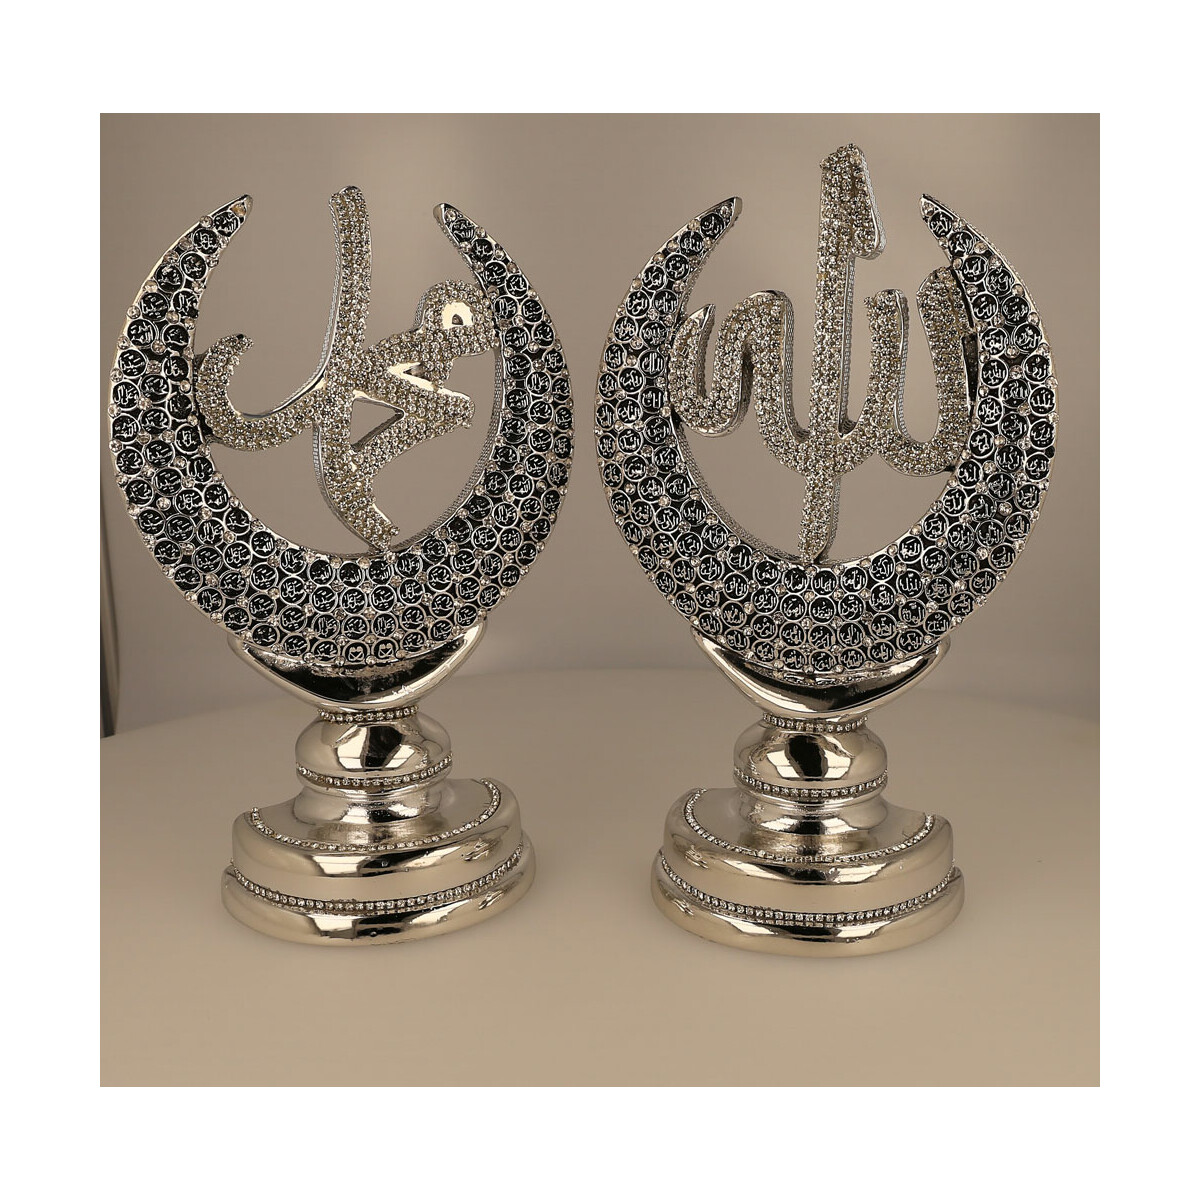 Hilal Deko mit Aufschrift Allah und Muhammed in Silber, 29,90 €